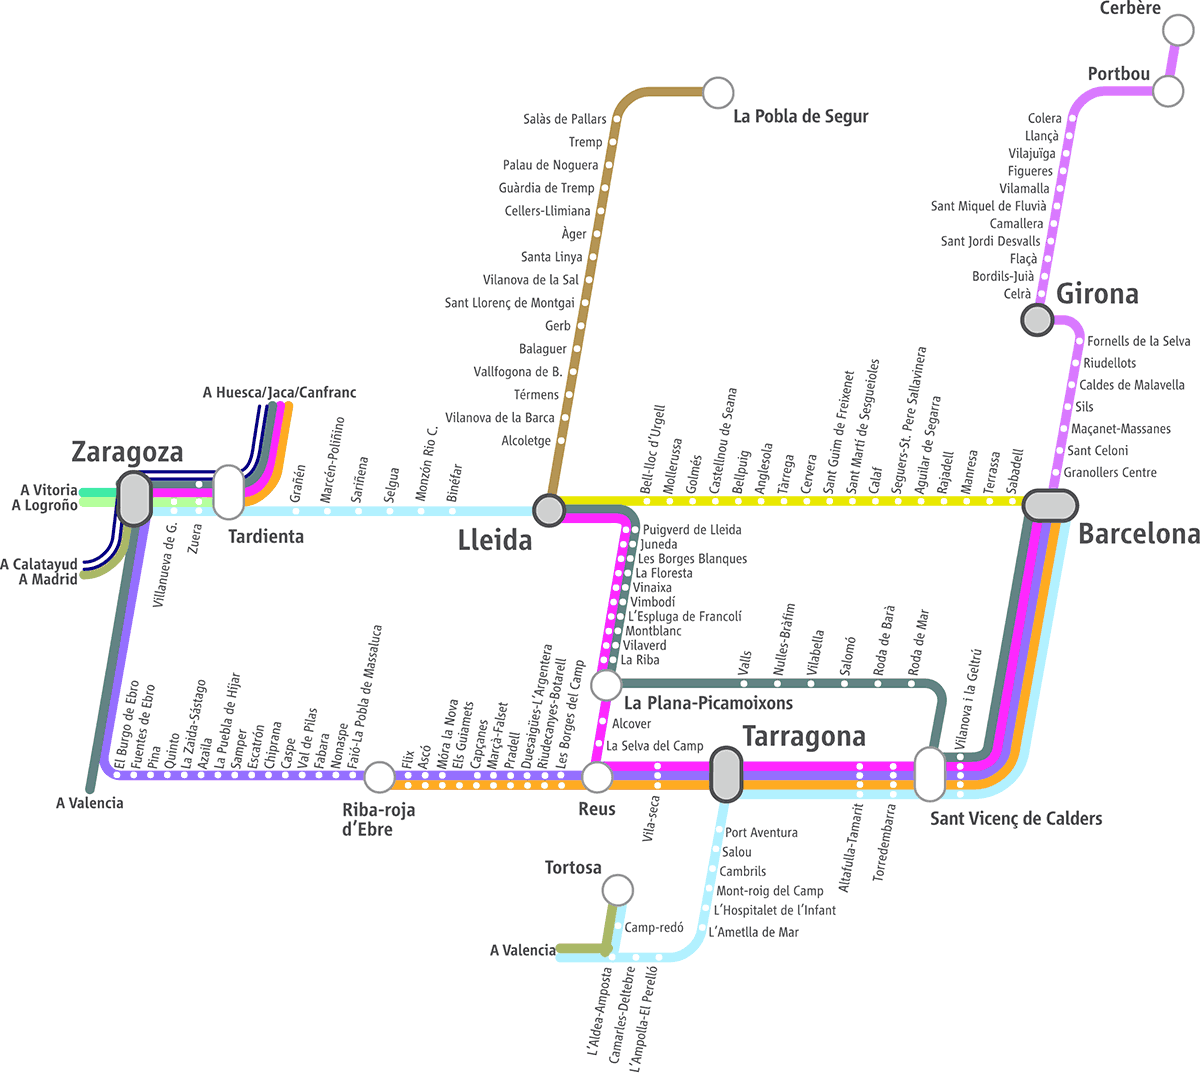 Схема поездов Renfe